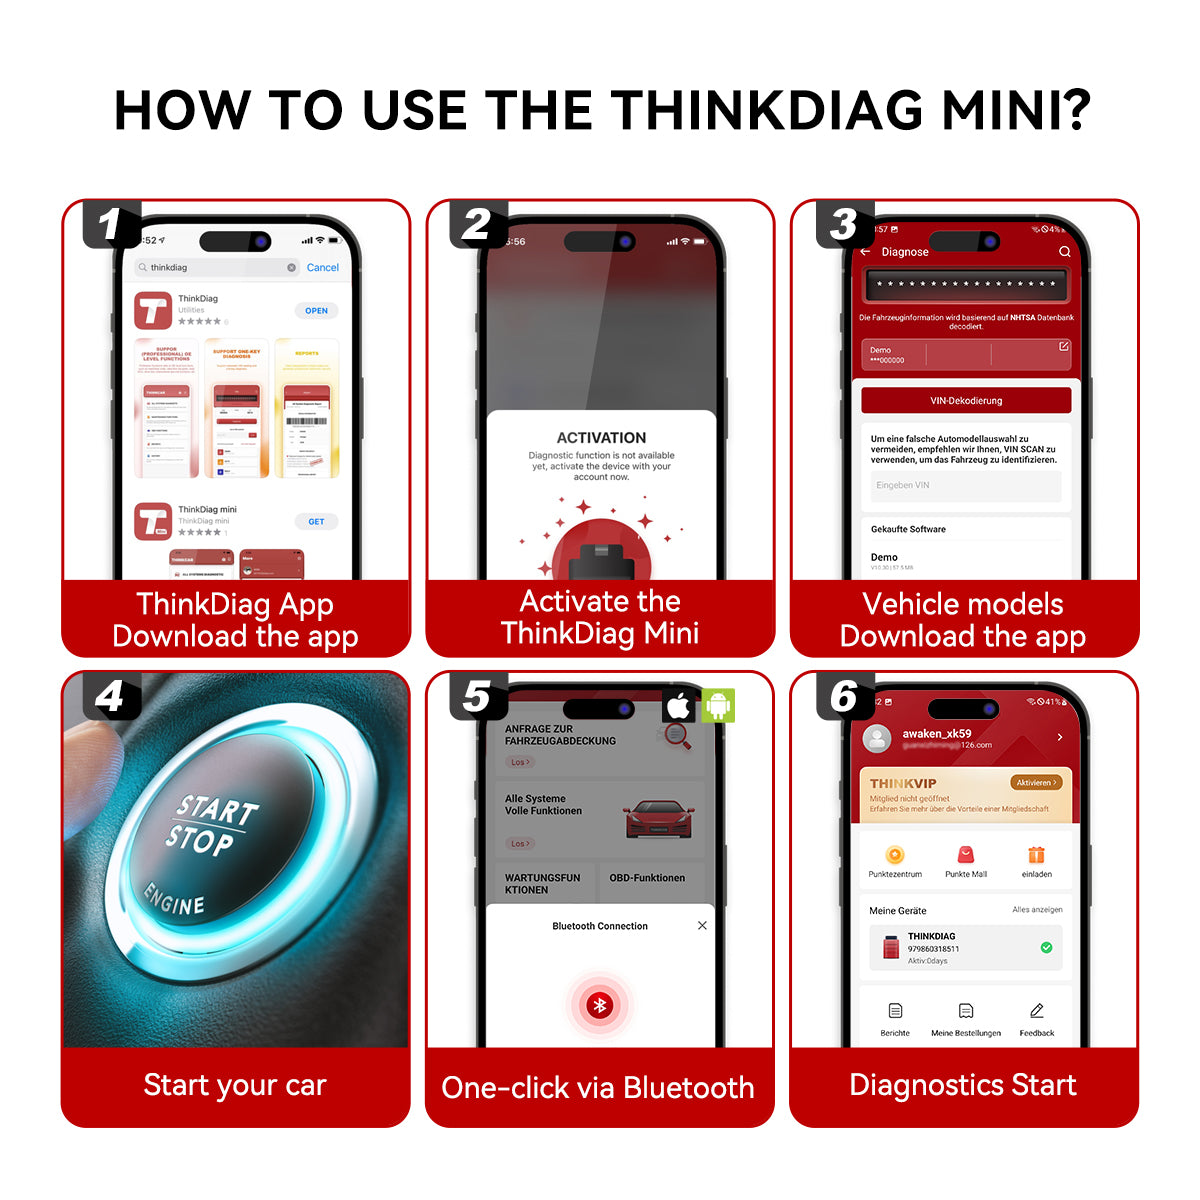 thinkdiag mini